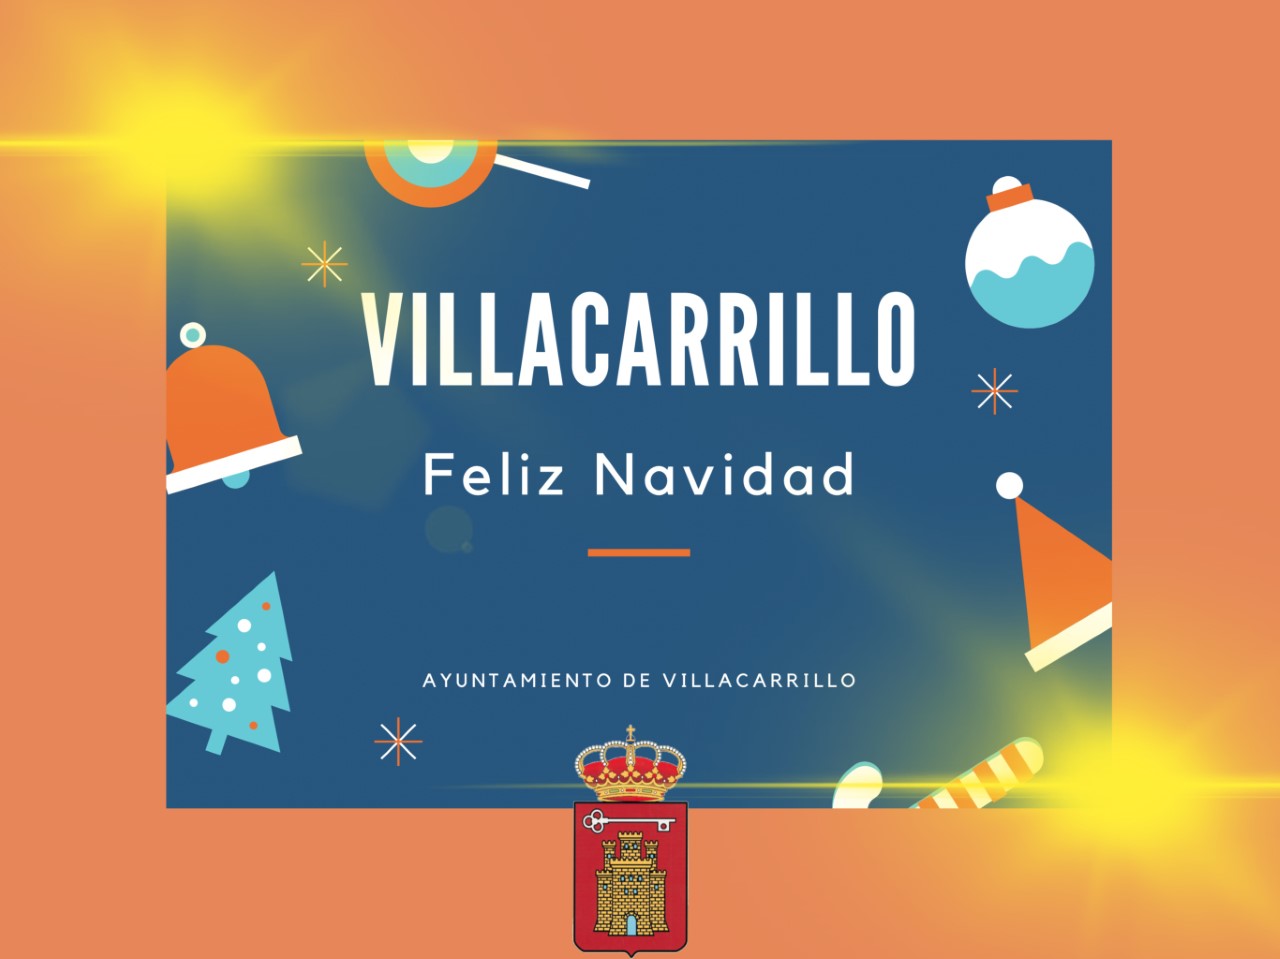 Felicitación Navideña del Ayuntamiento de Villacarrillo